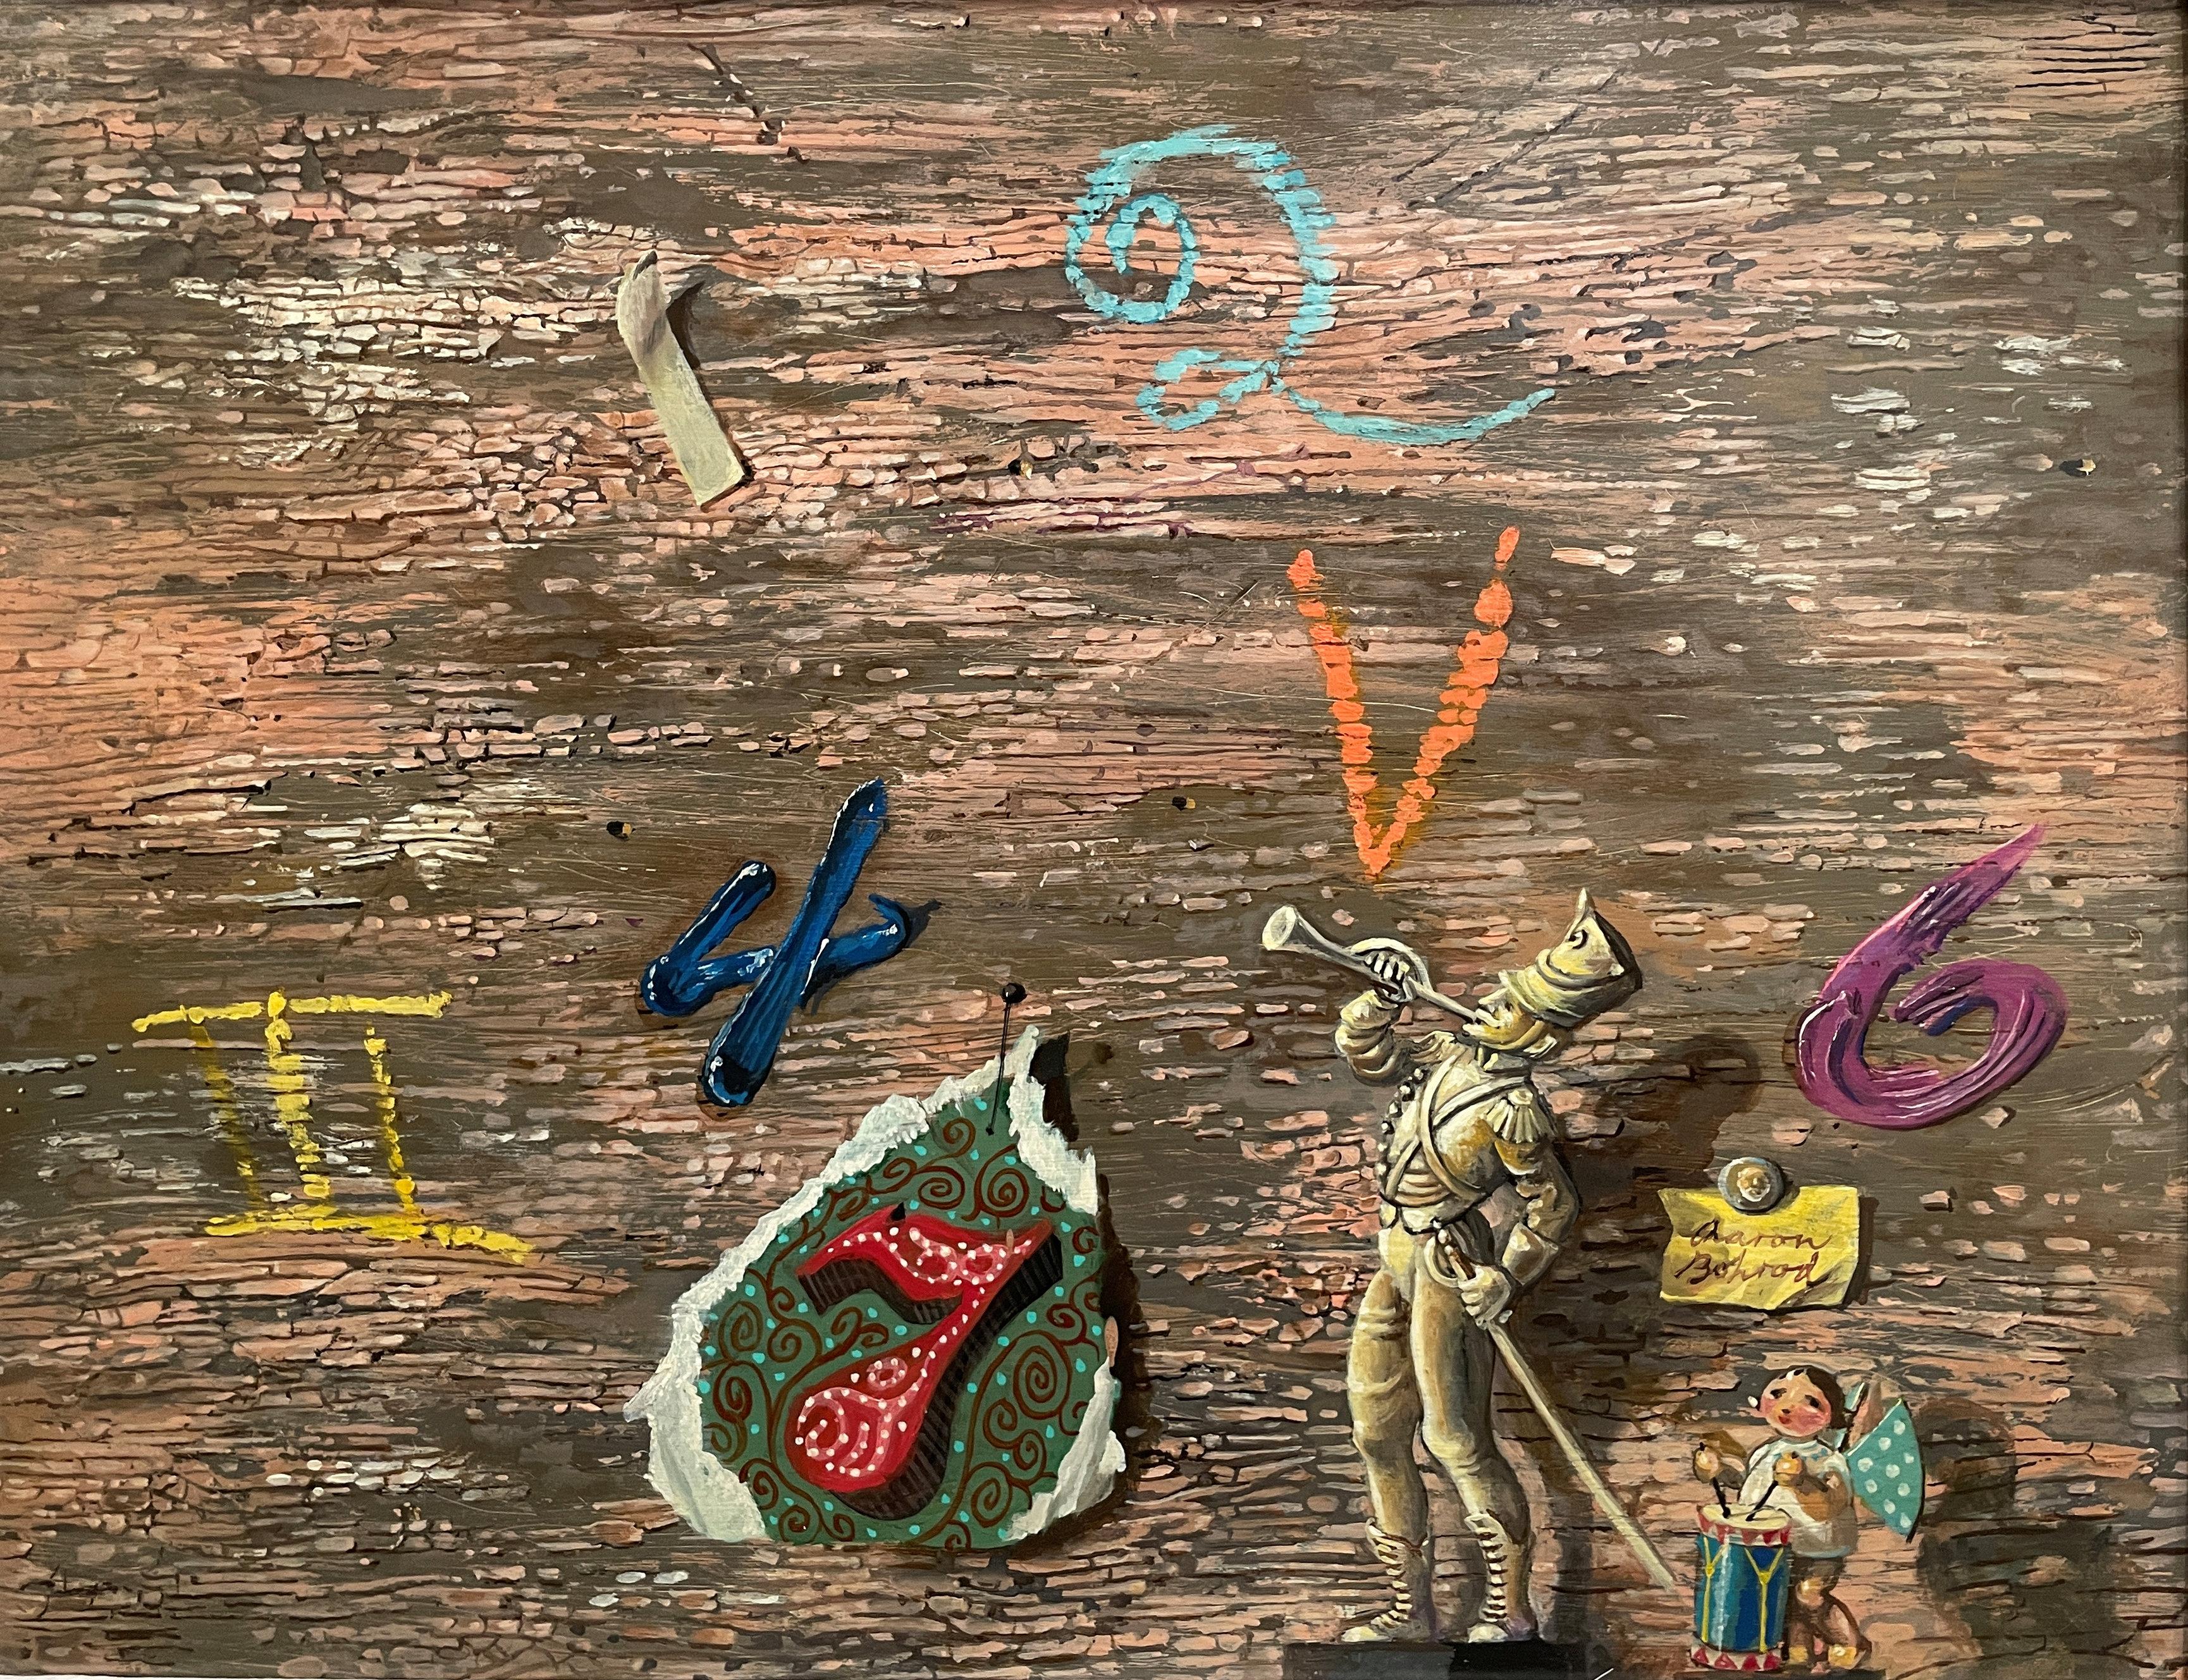 Aaron Bohrod
Die glorreichen Sieben, 1990
Signiert unten rechts
Öl auf Gesso-Tafel
11 x 14 Zoll

Aaron Bohrods Arbeit ist nicht auf einen Stil oder ein Medium beschränkt. Zunächst als regionalistischer Maler amerikanischer Szenen, insbesondere aus